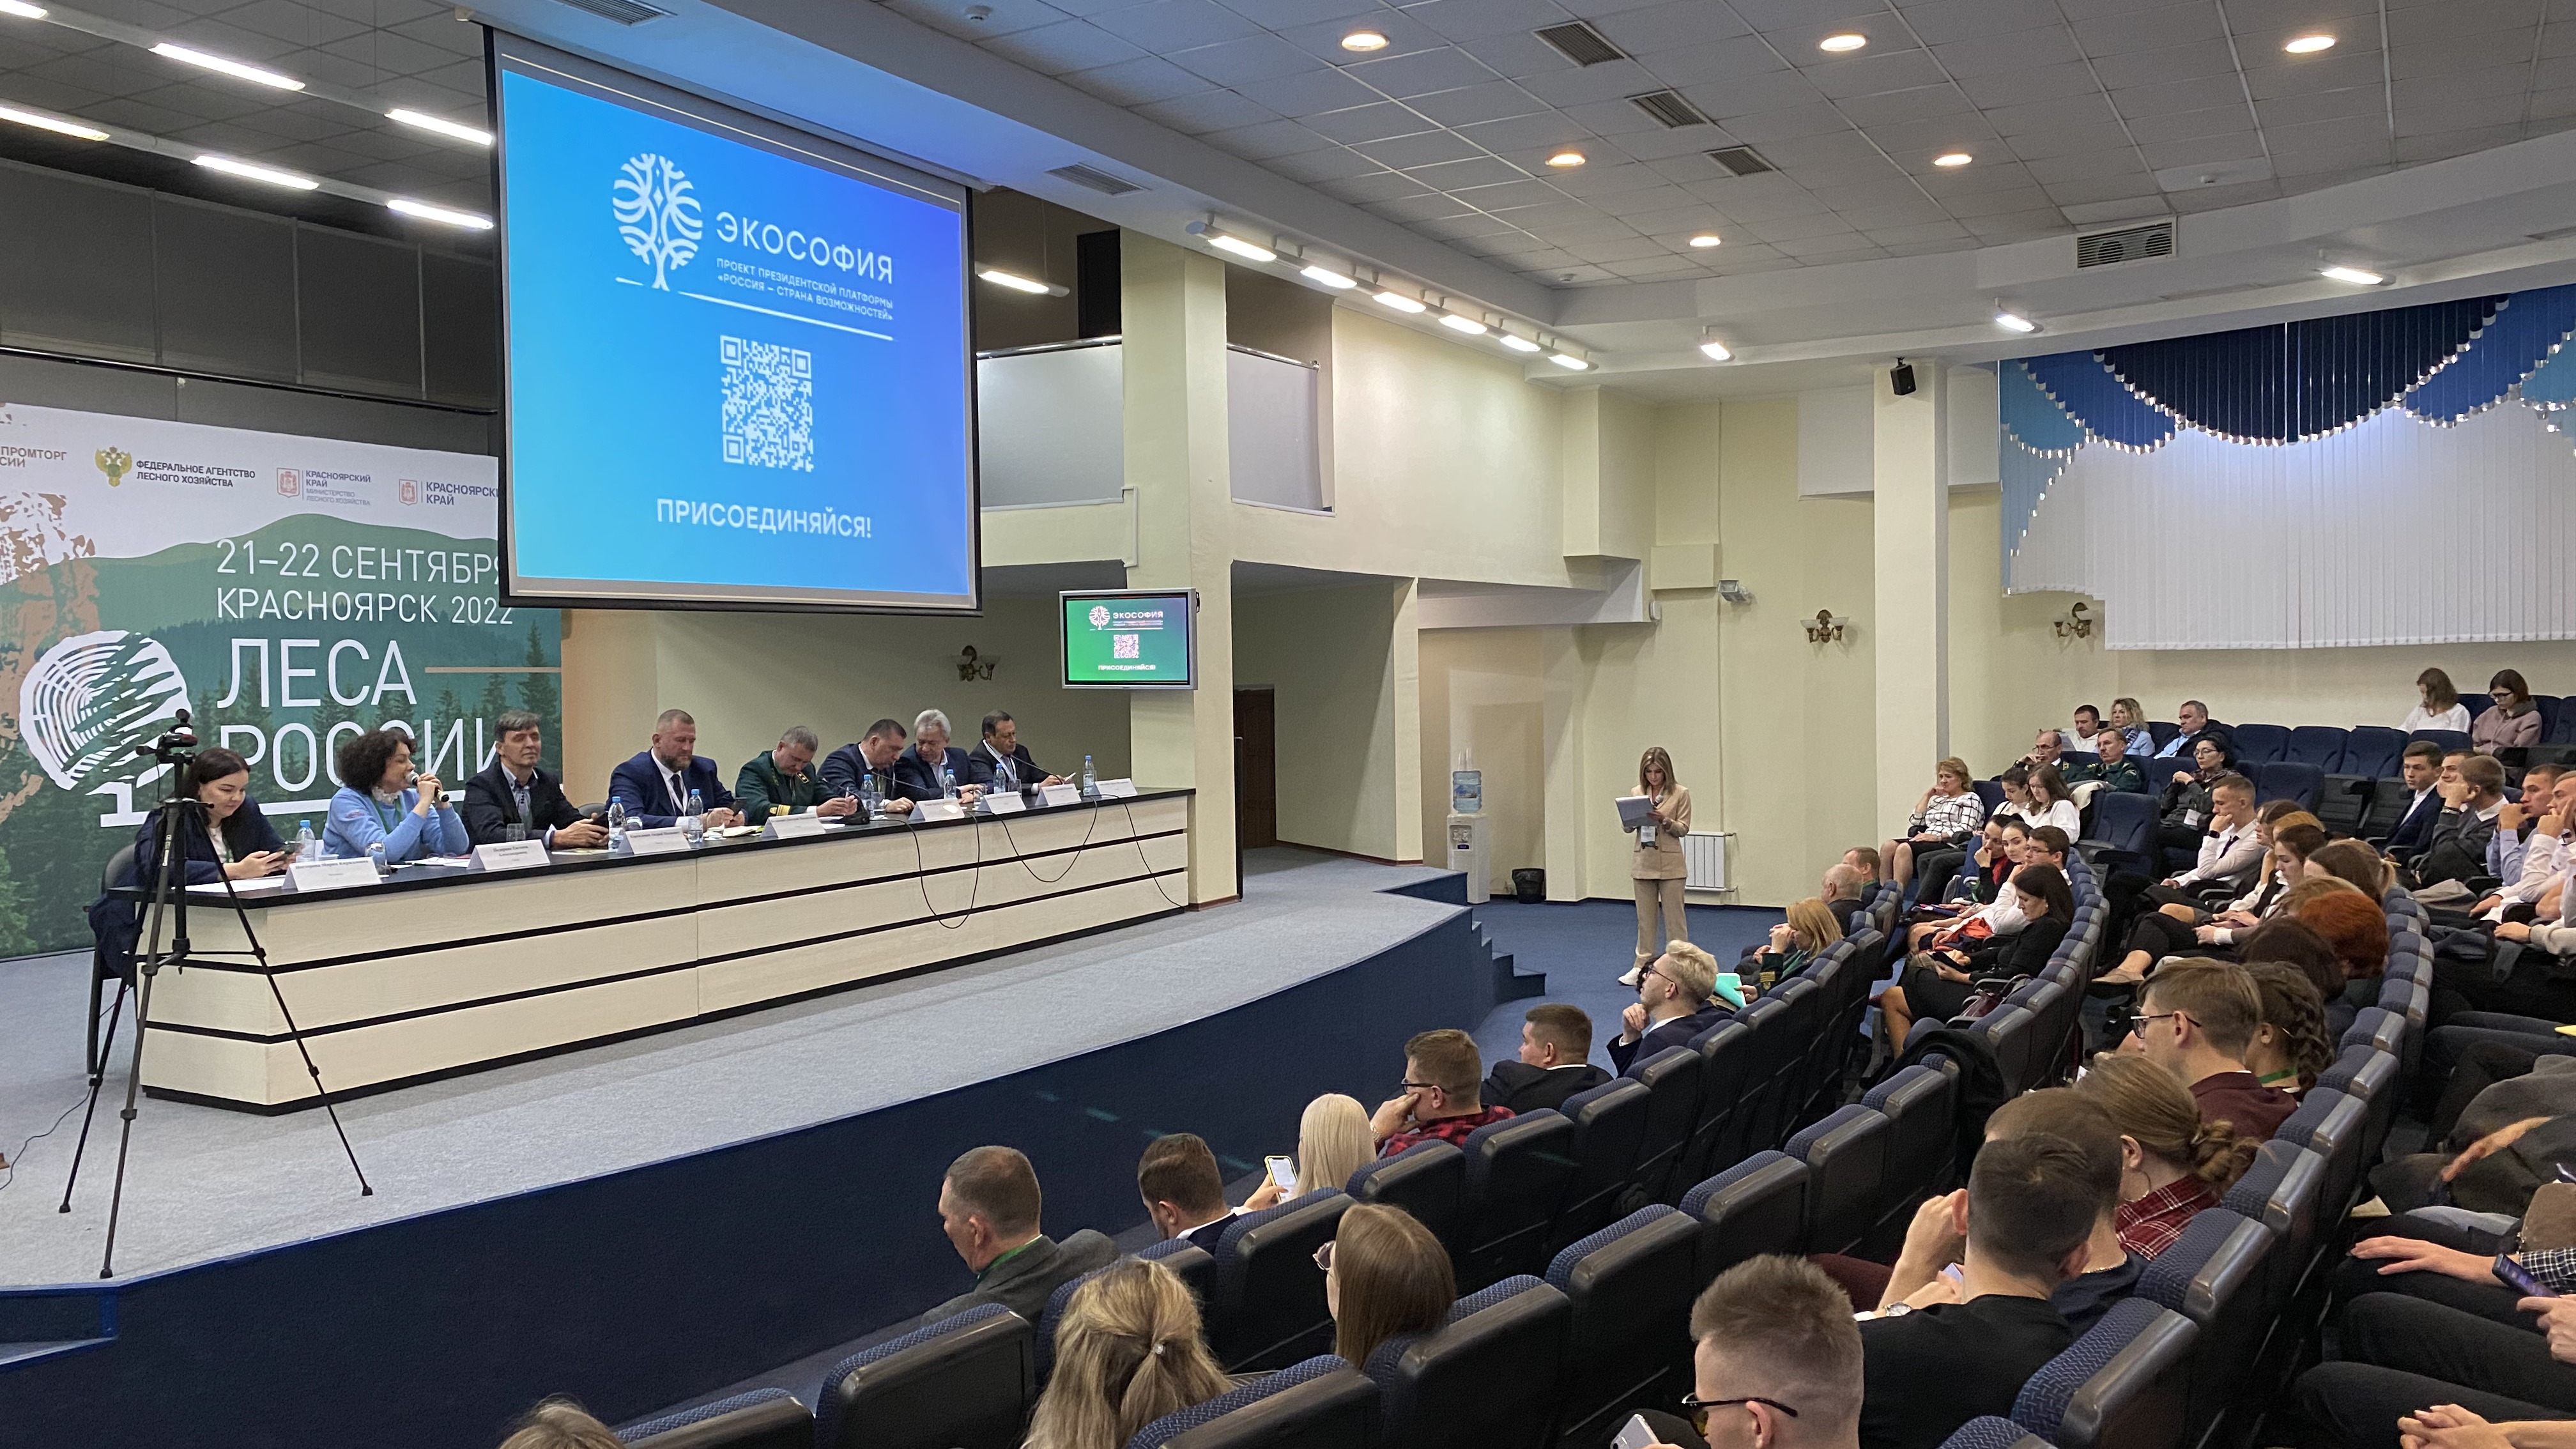 Карьерные перспективы молодежи в экосфере обсудили на форуме «Леса России» в Красноярске